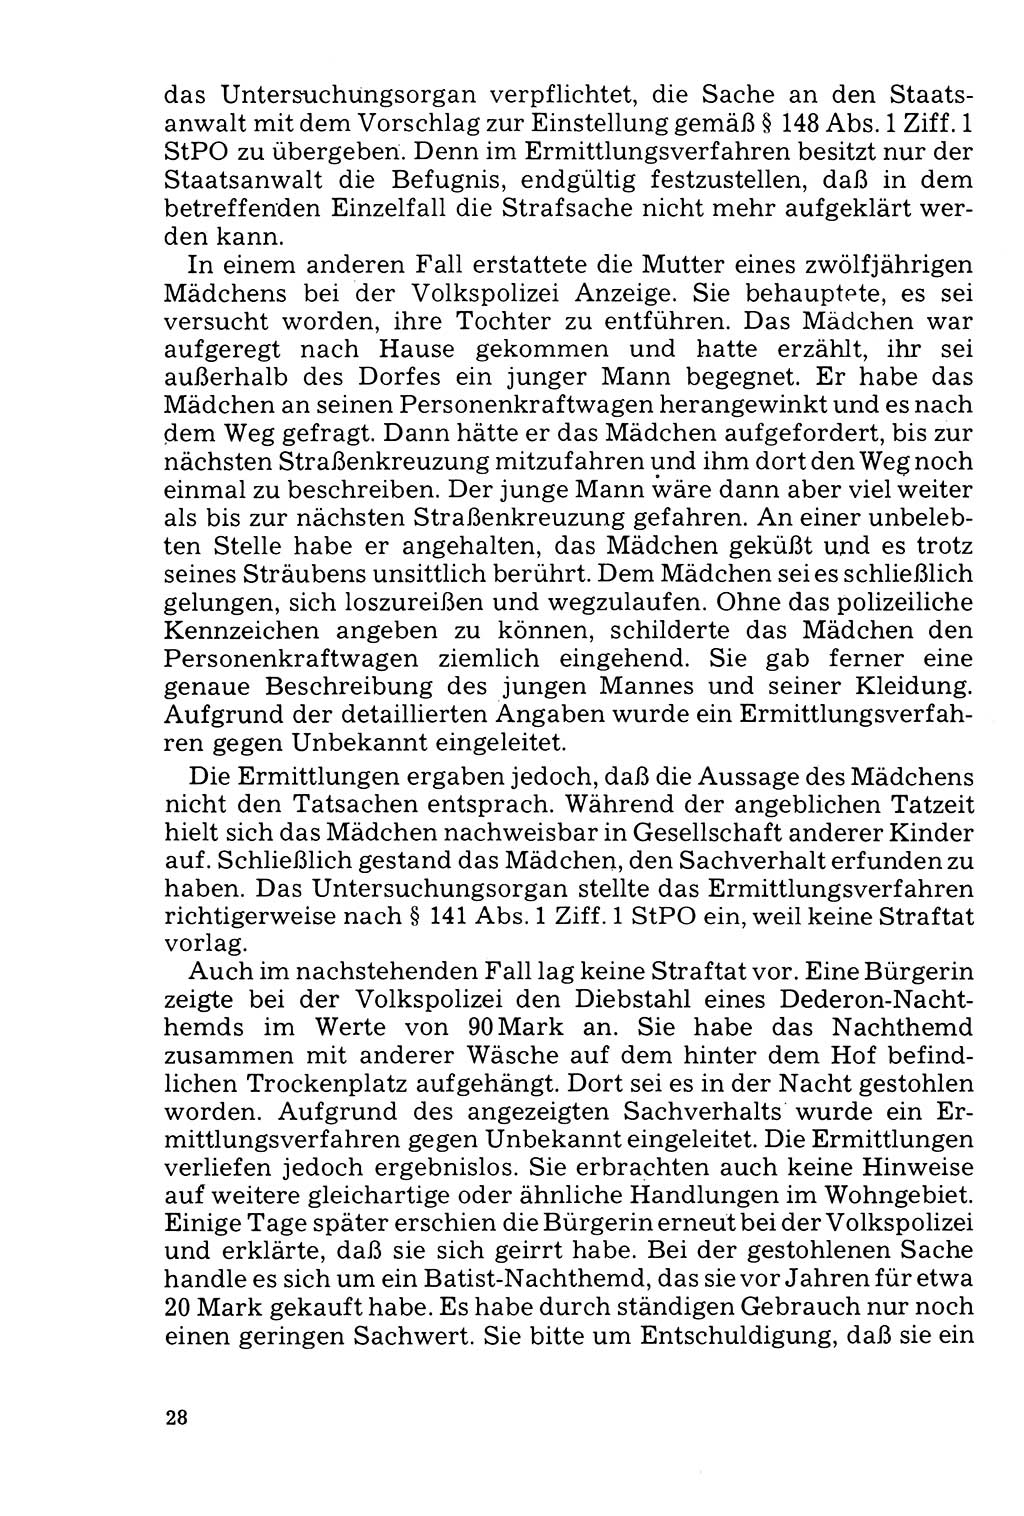 Der Abschluß des Ermittlungsverfahrens [Deutsche Demokratische Republik (DDR)] 1978, Seite 28 (Abschl. EV DDR 1978, S. 28)